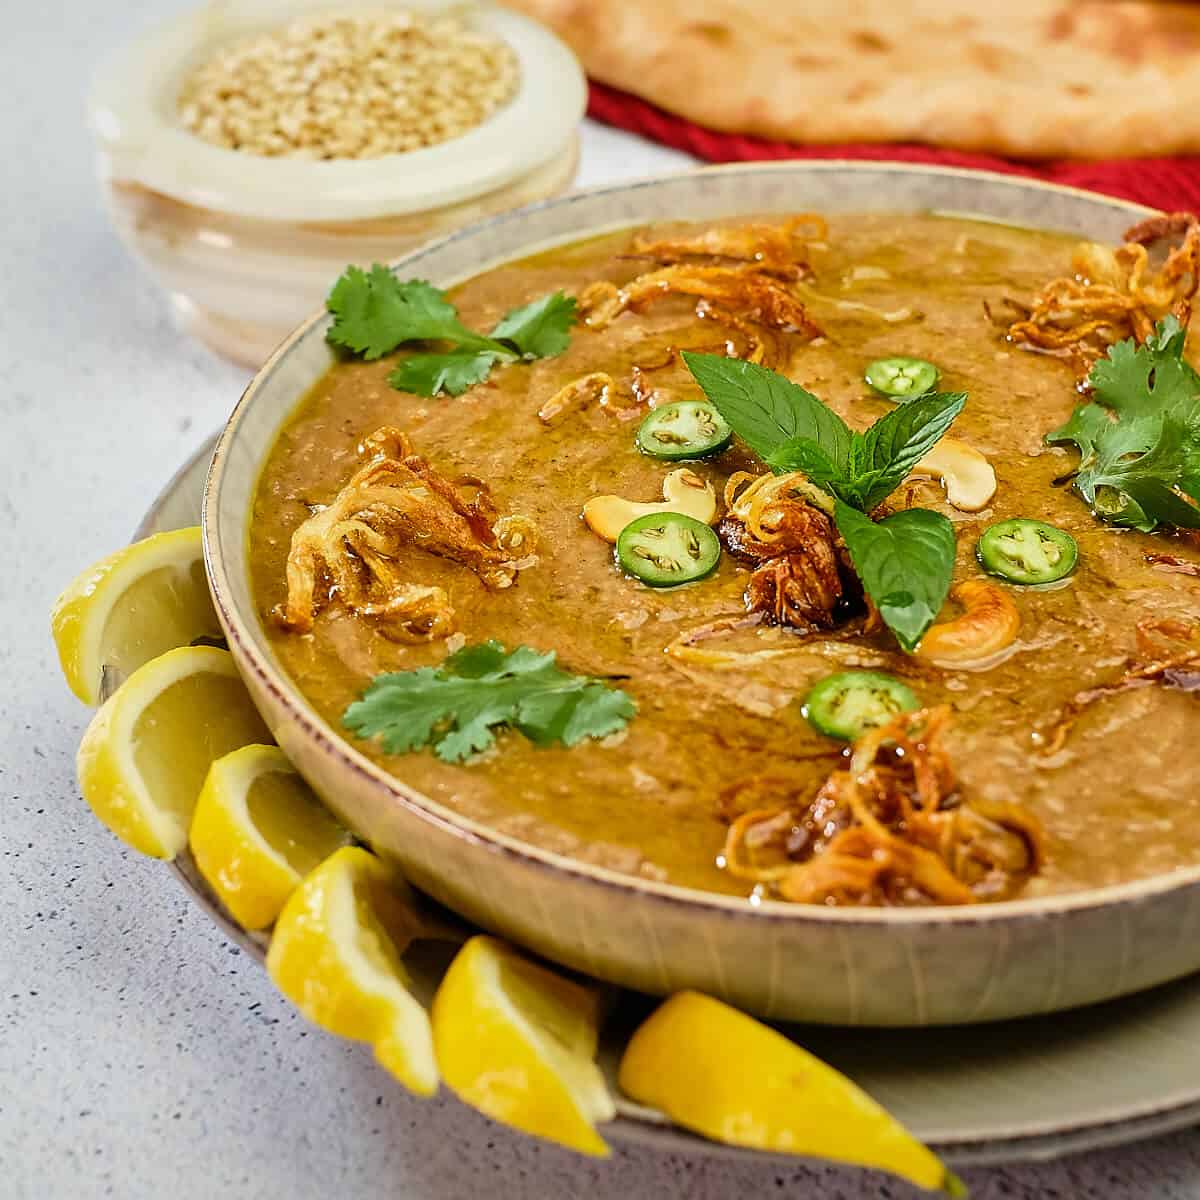 Hyderabadi Haleem Recipe - The Delicious Crescent